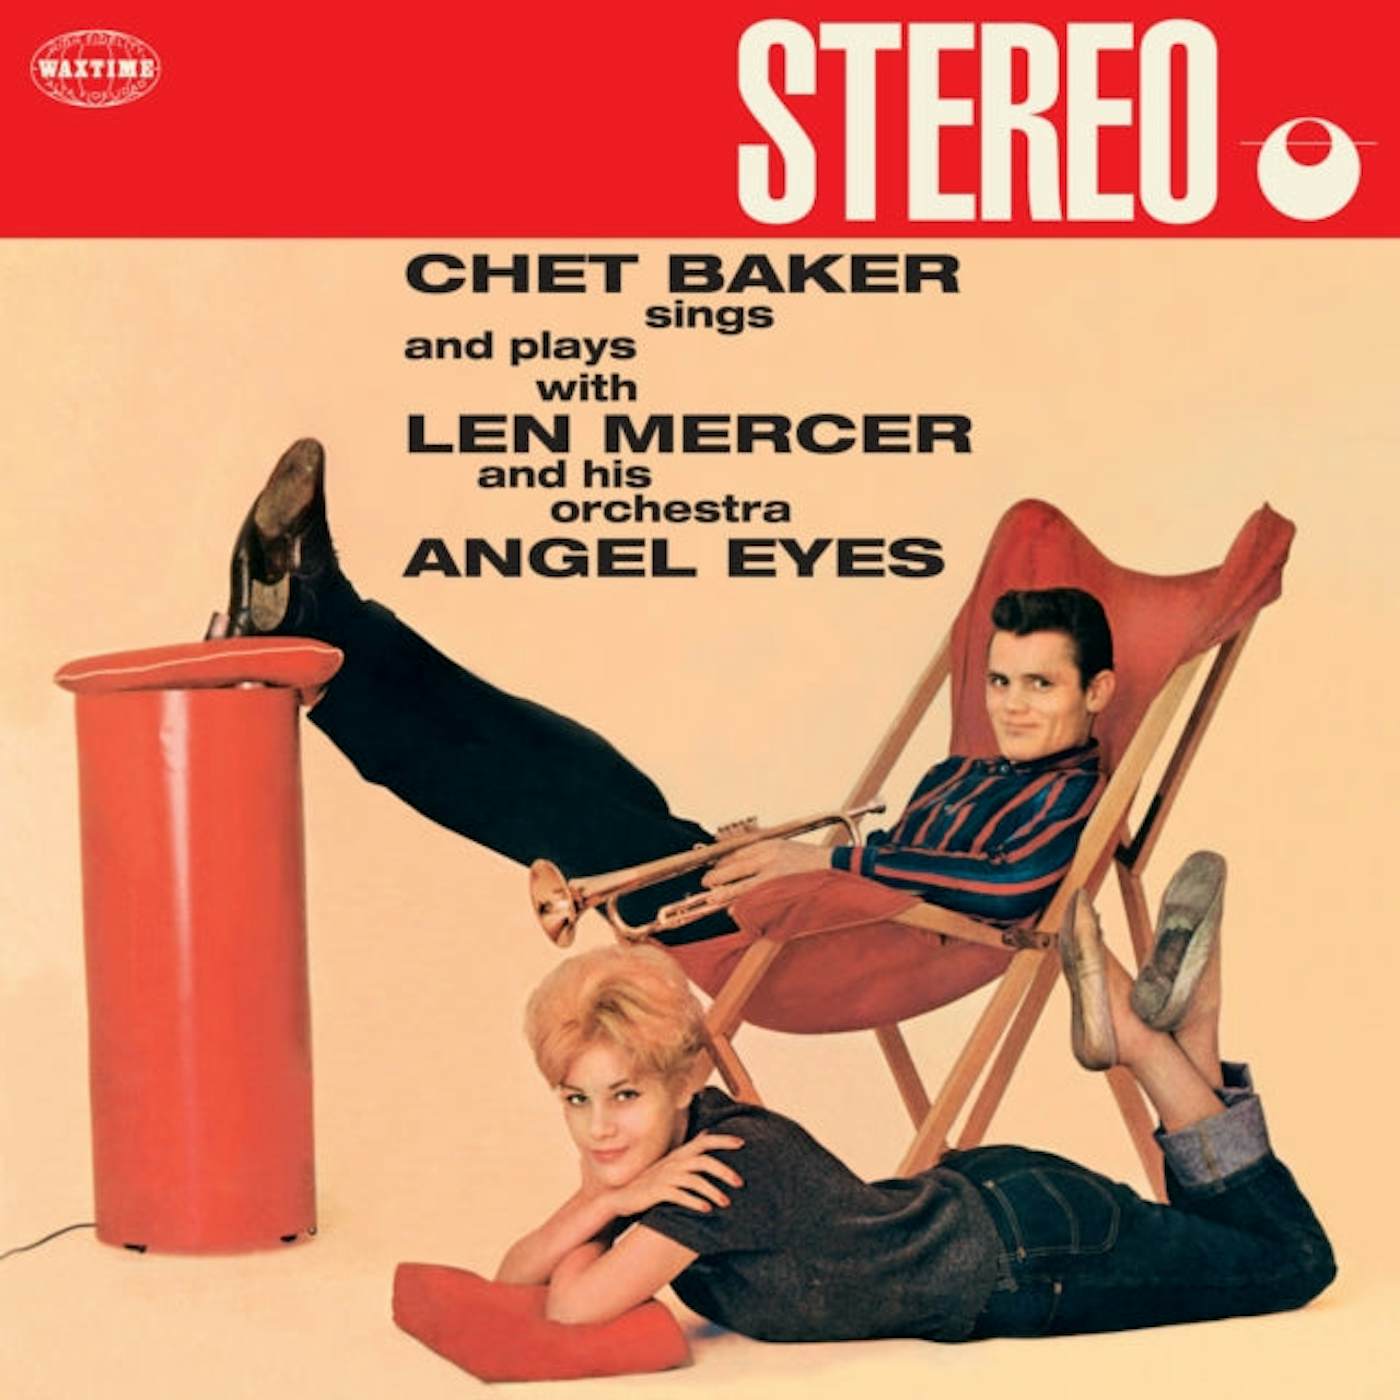 Chet Baker LP Vinyl Record - Angel Eyes (+1 Bonus Track) (Limited Red Vinyl)